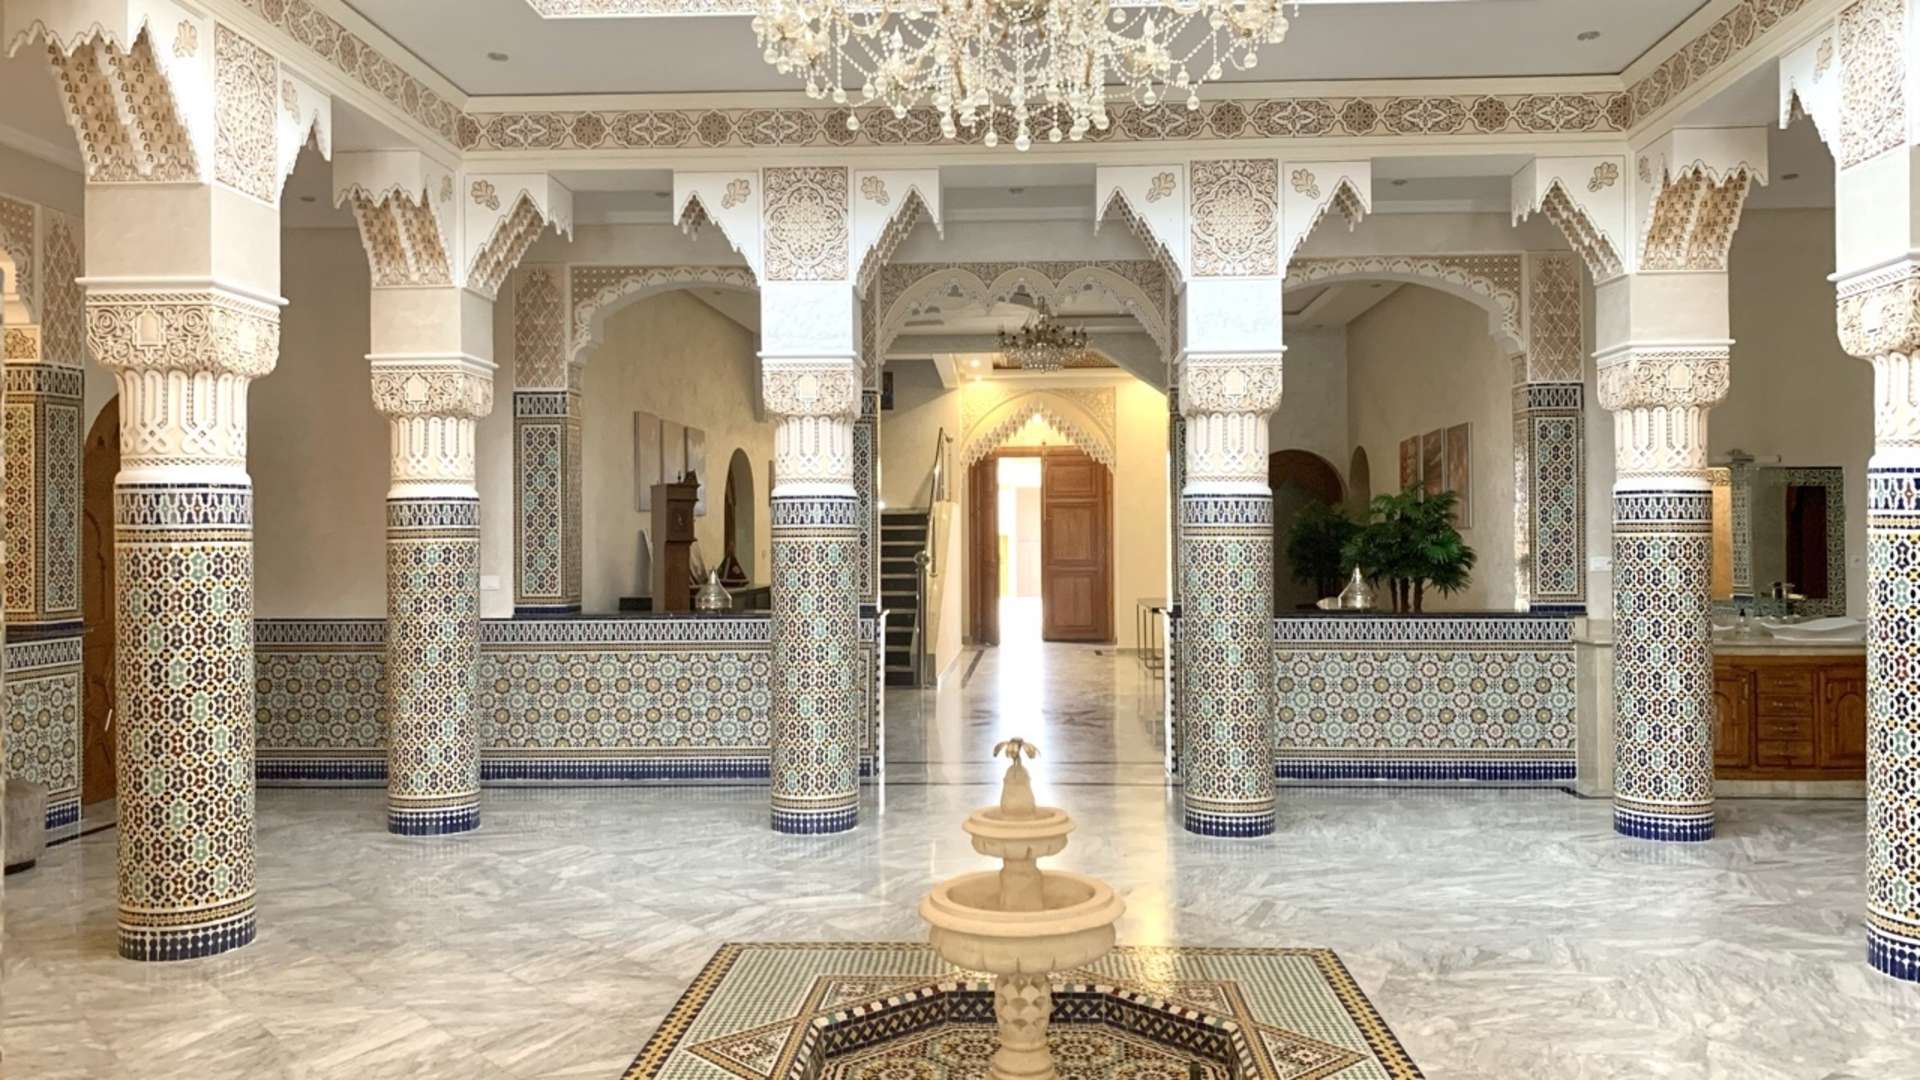 Location de vacances,Villa,Magnifique propriété privée de 7 suites à 15 min. du centre de Marrakech,Marrakech,Route de Fès